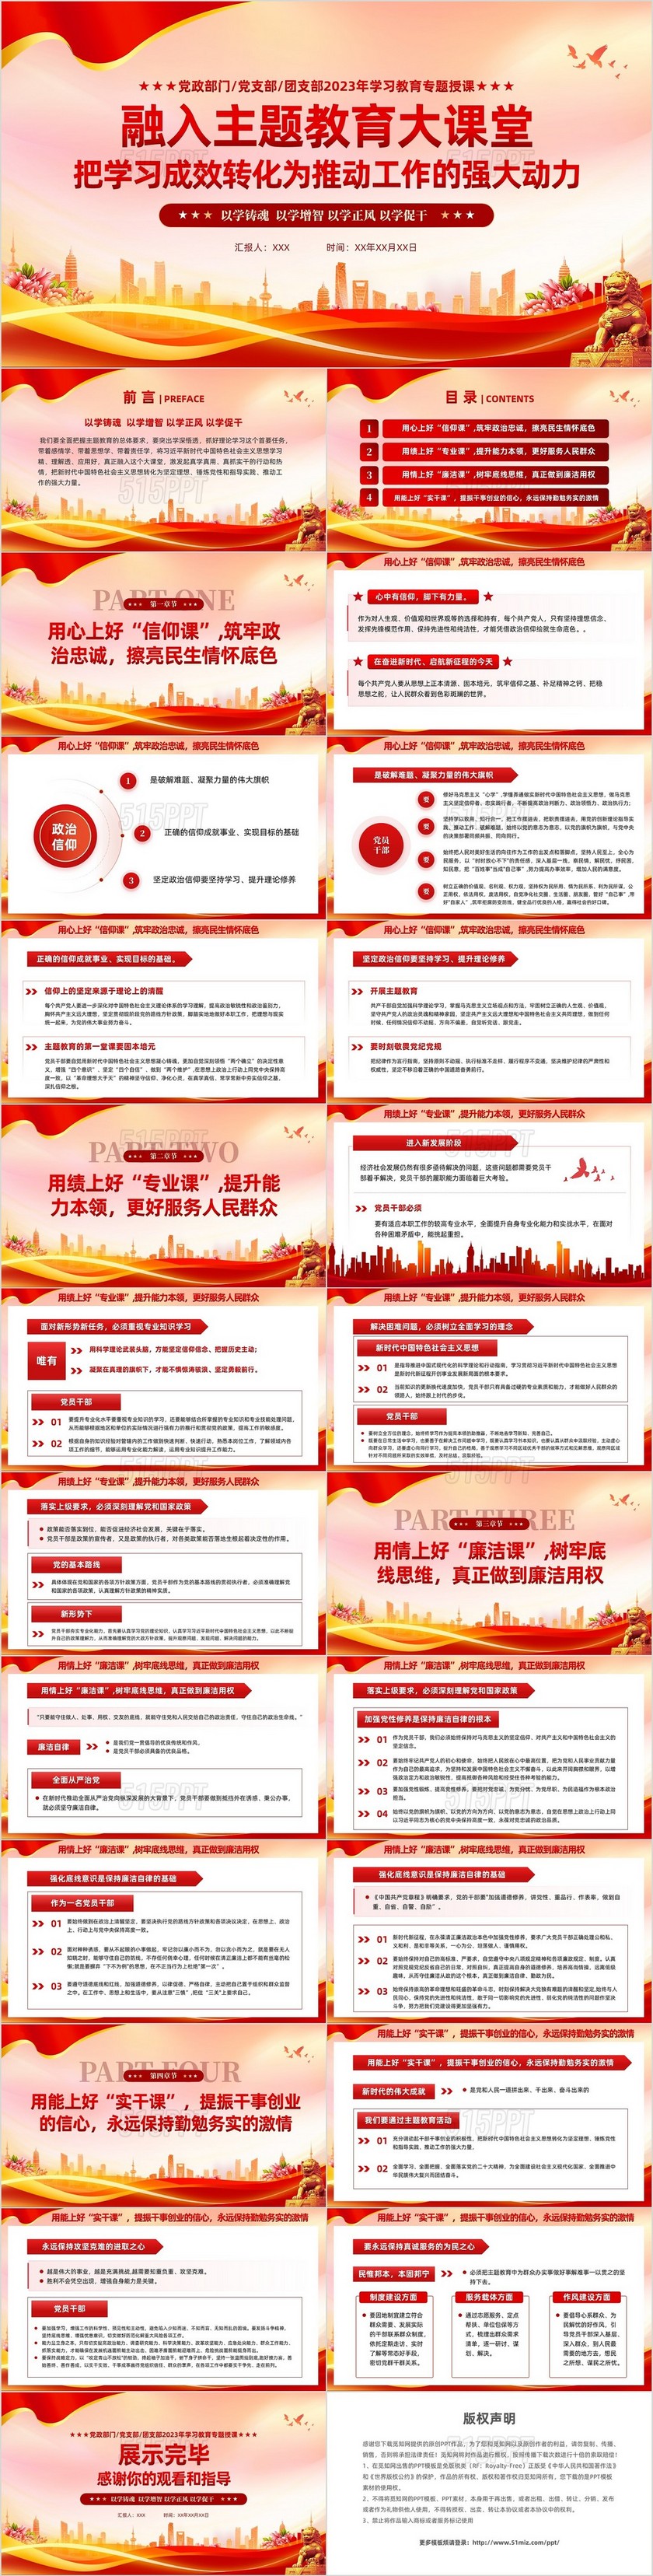 红色党建第二批新时代中国特色社会主义思想党课课件PPT